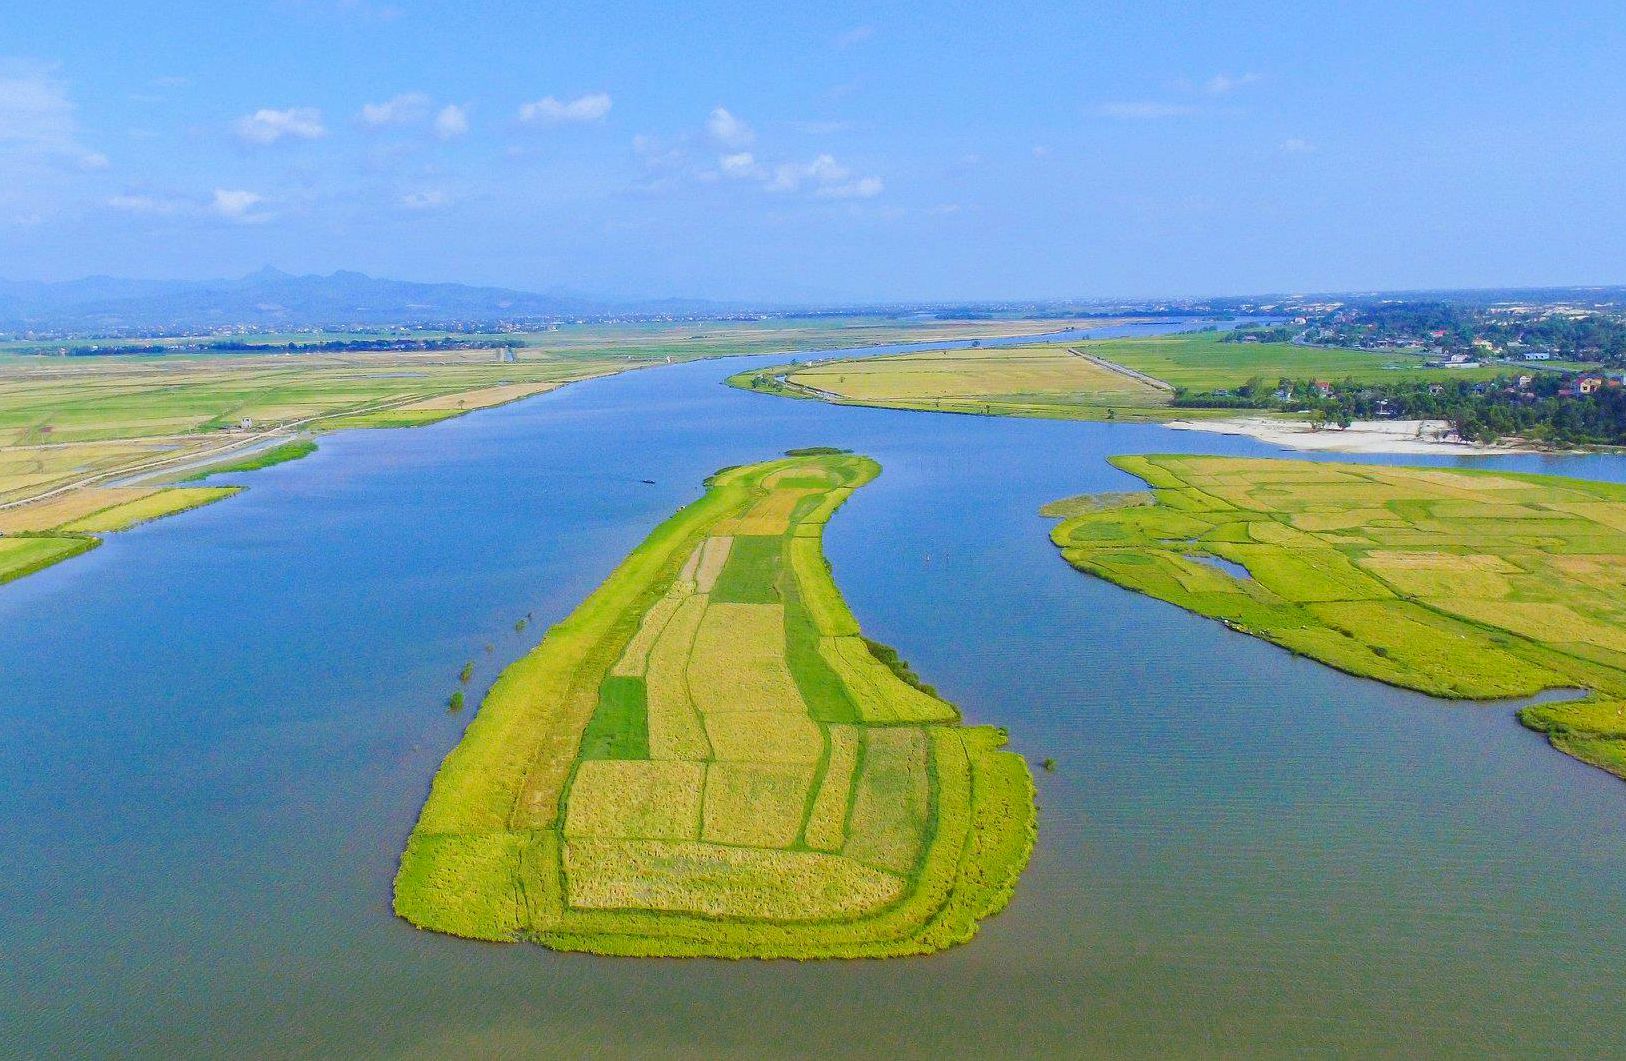 Vì sao dòng sông Kiến Giang nổi tiếng ở Quảng Bình còn có tên khác là sông Nghịch Hà? - Ảnh 1.